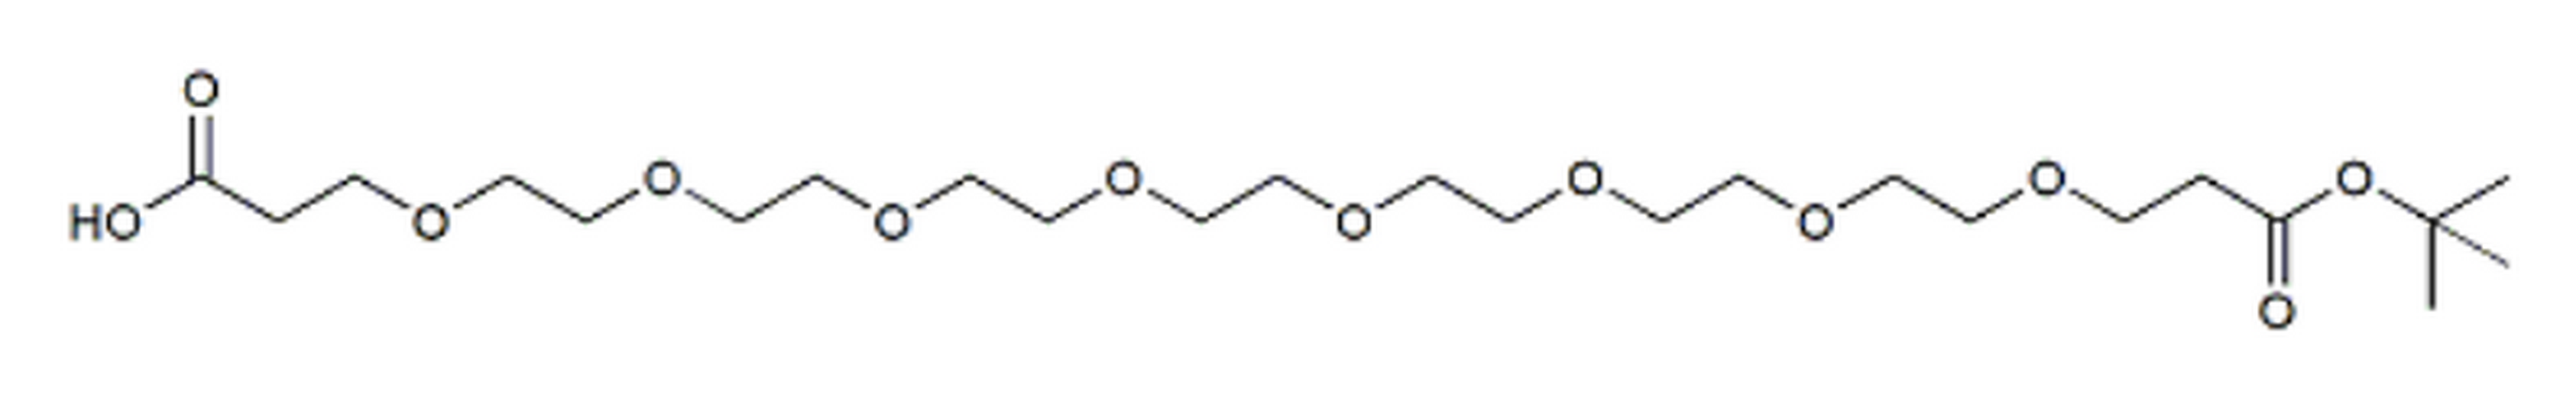 Acid-PEG8-t-butyl ester